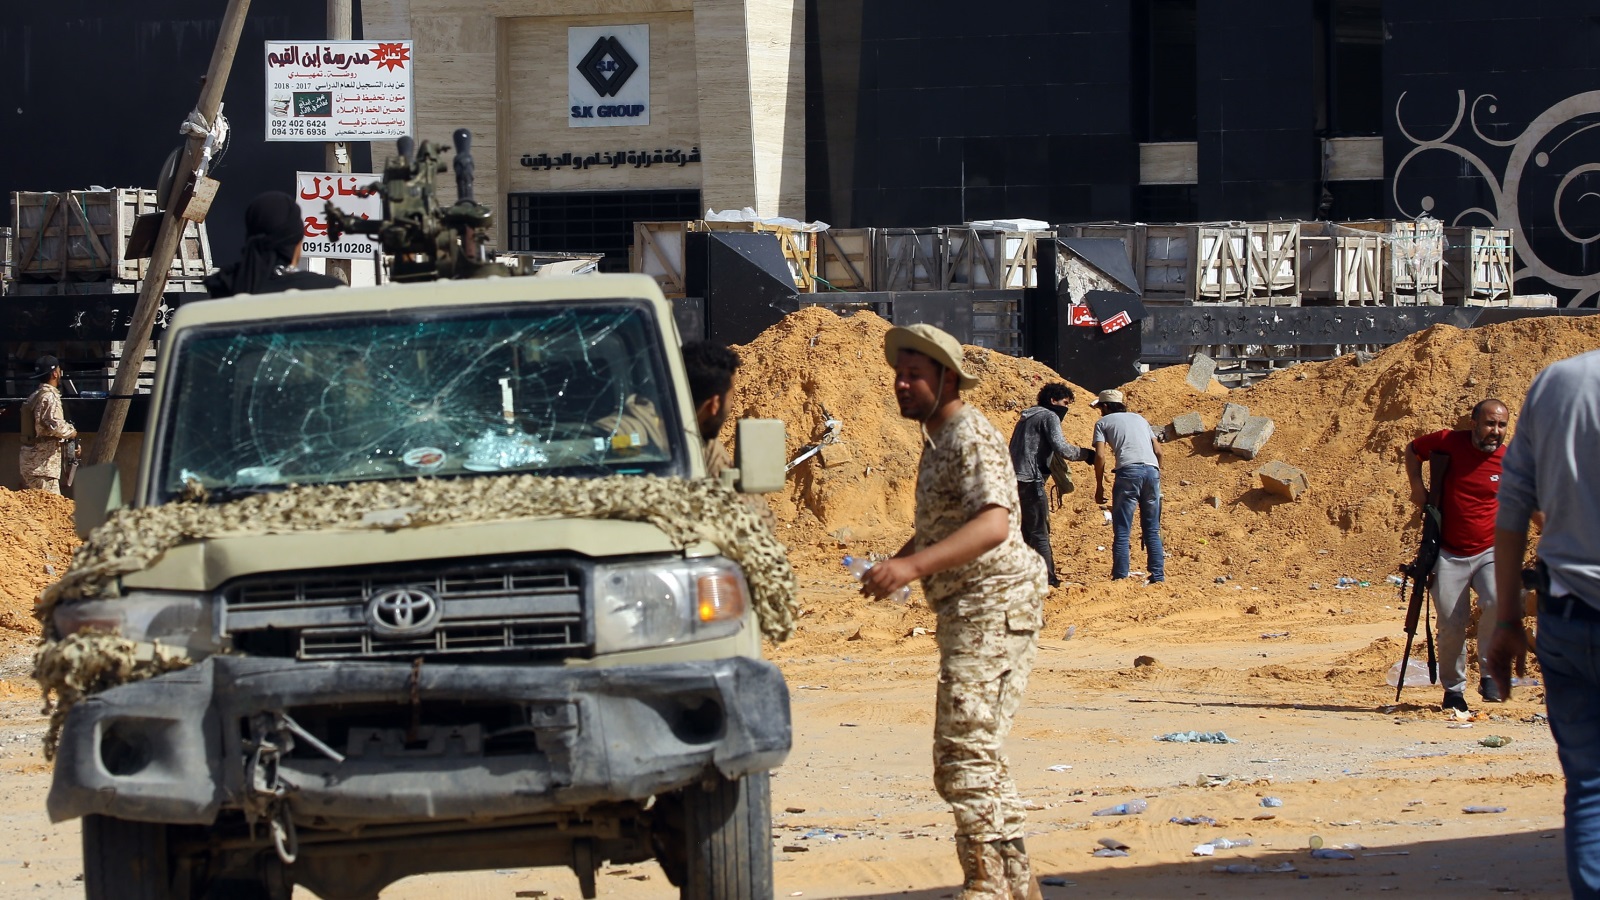 ‪يثير توتر الوضع في ليبيا مخاوف الدول المجاورة‬ يثير توتر الوضع في ليبيا مخاوف الدول المجاورة (الأناضول)